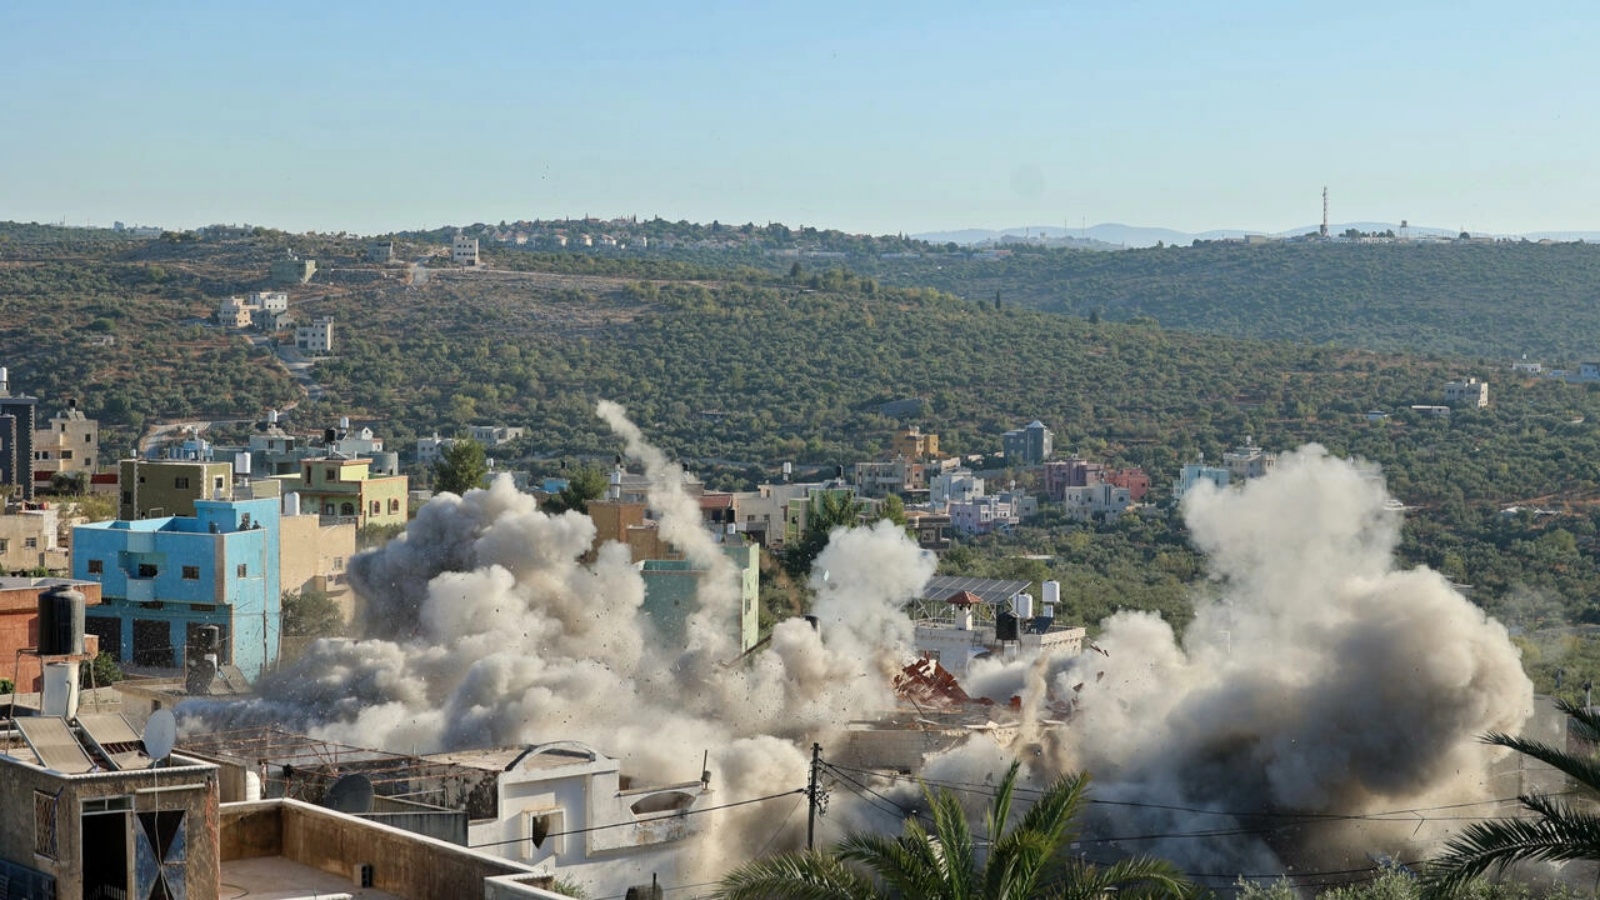 القوات الإسرائيلية تهدم منزل يحيى ميري في الضفة الغربية، أحد فلسطينيين يشتبه في تنفيذهما هجوم إطلاق نار في مستوطنة أرئيل اليهودية